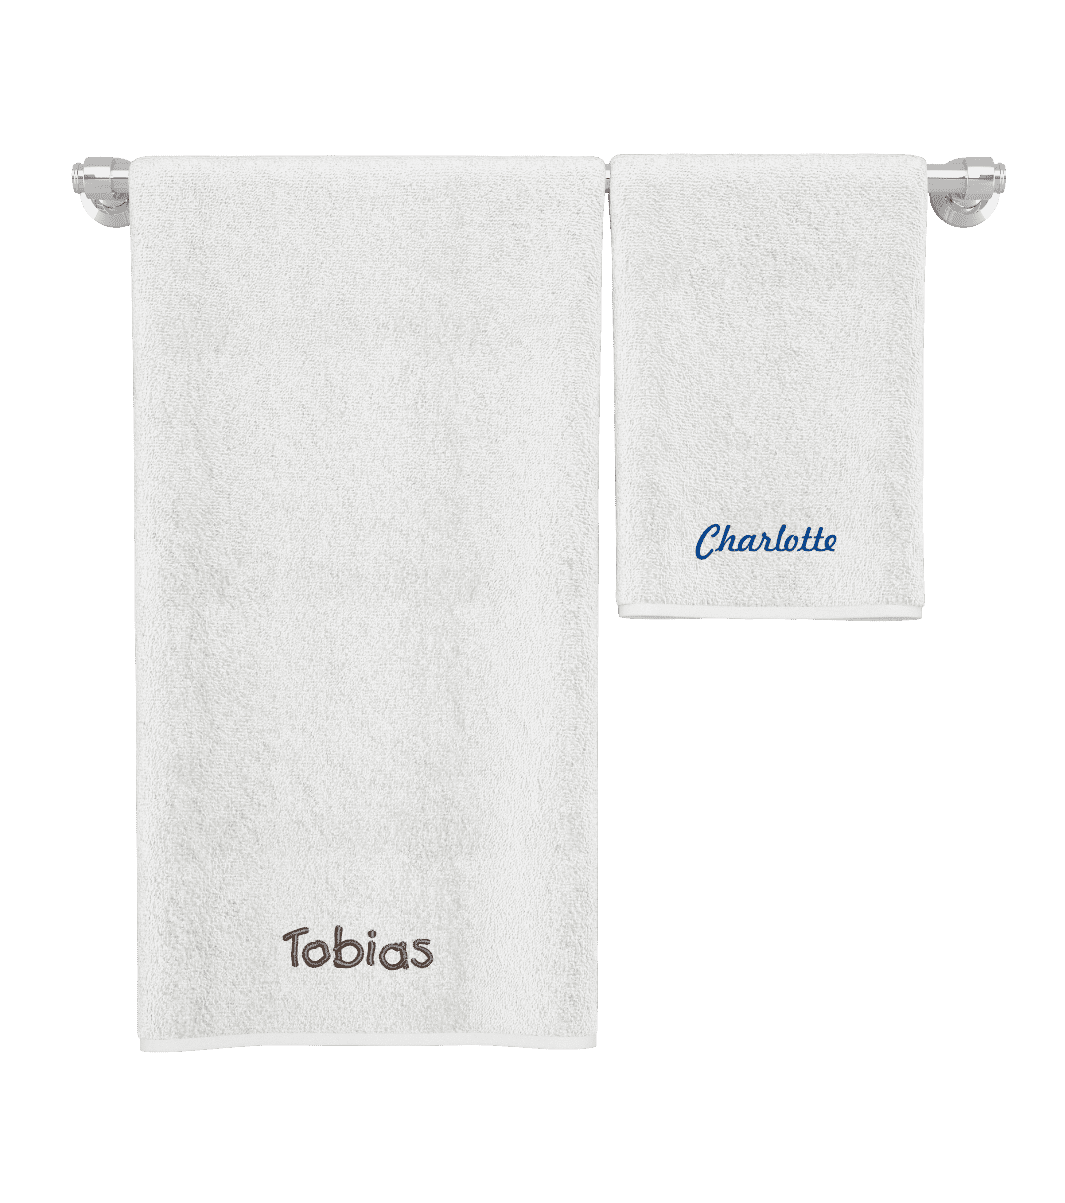 Handtücher mit Namen aus Stick auf einer Stange